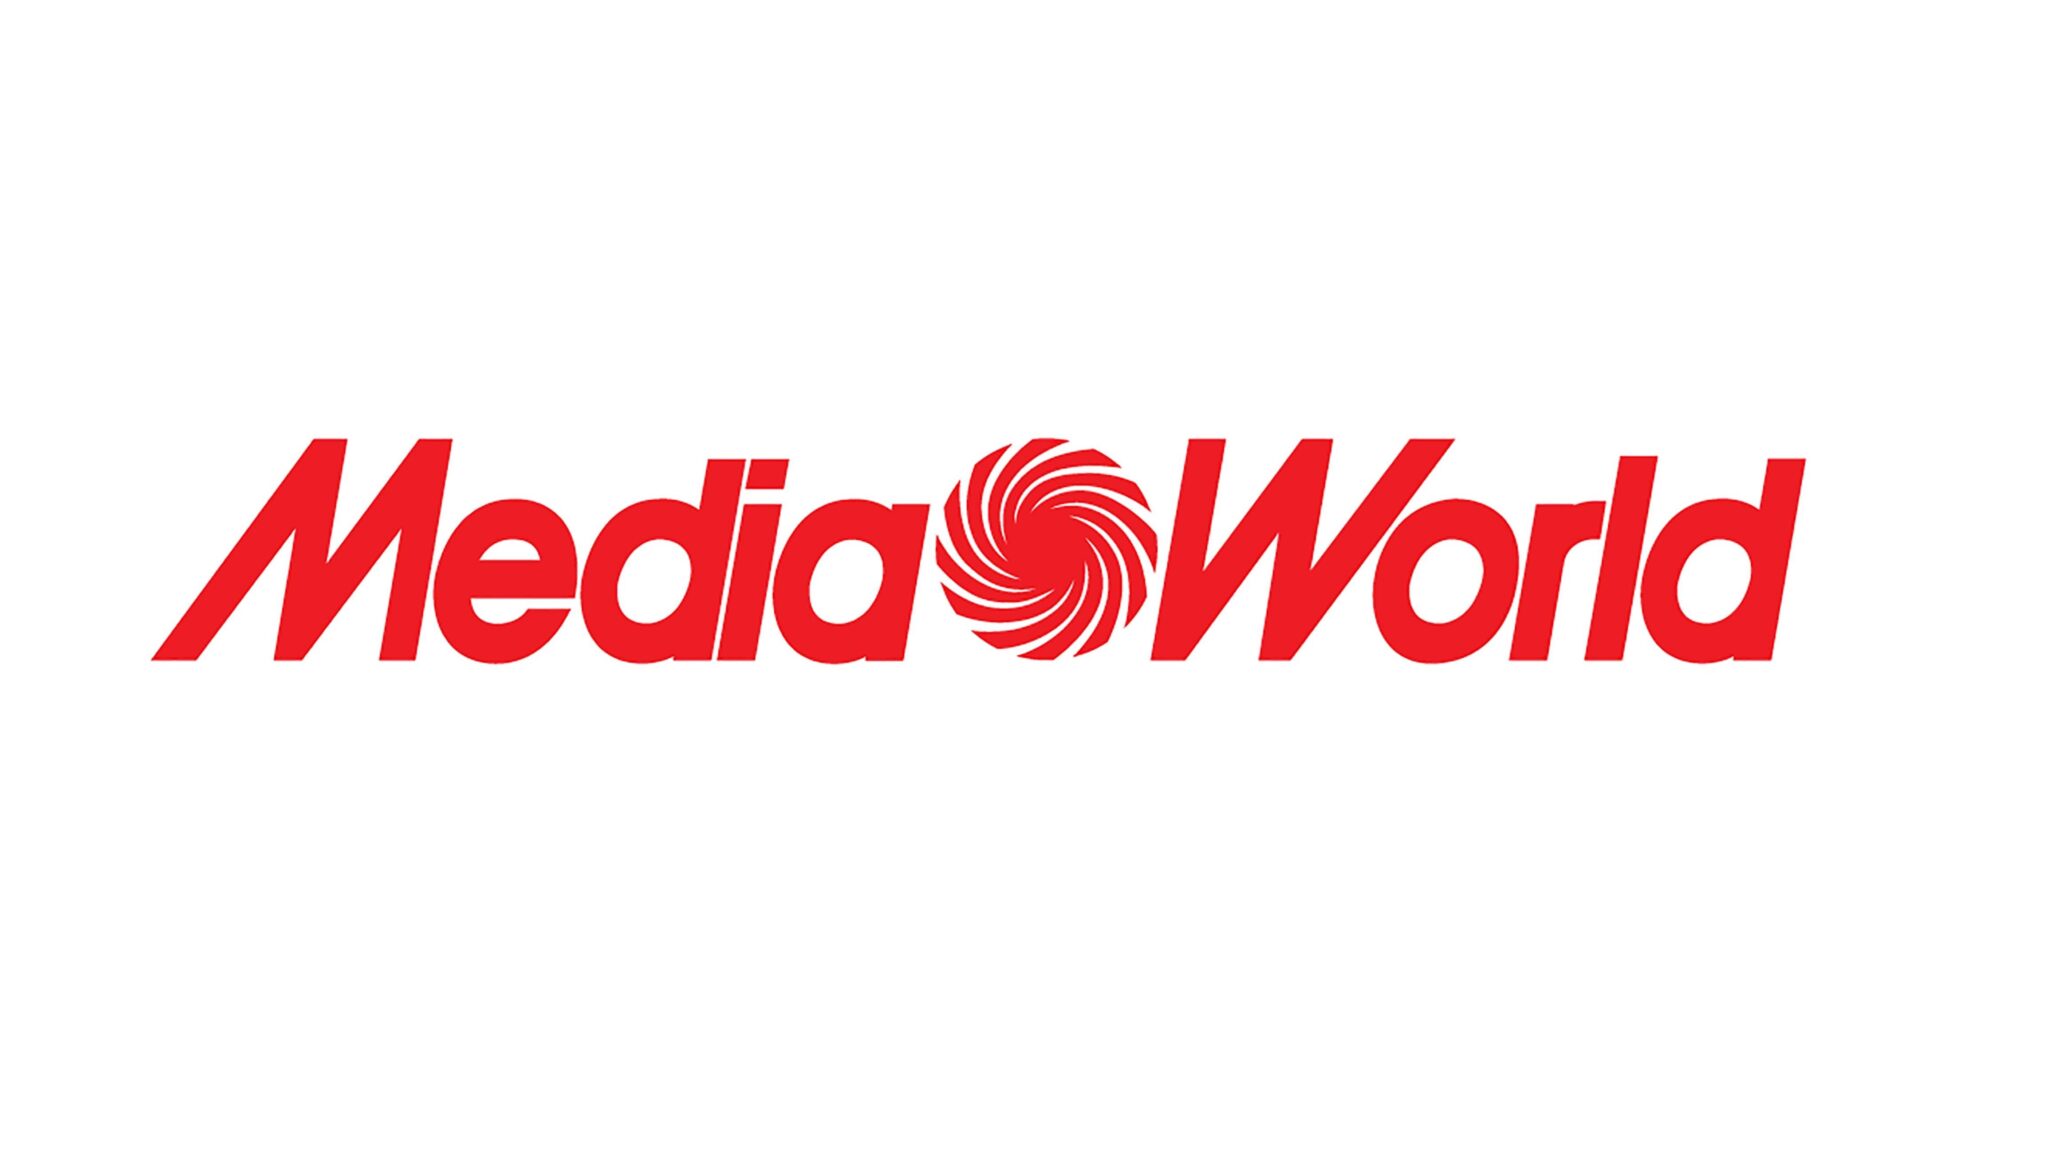 MediaWorld offerte Apple